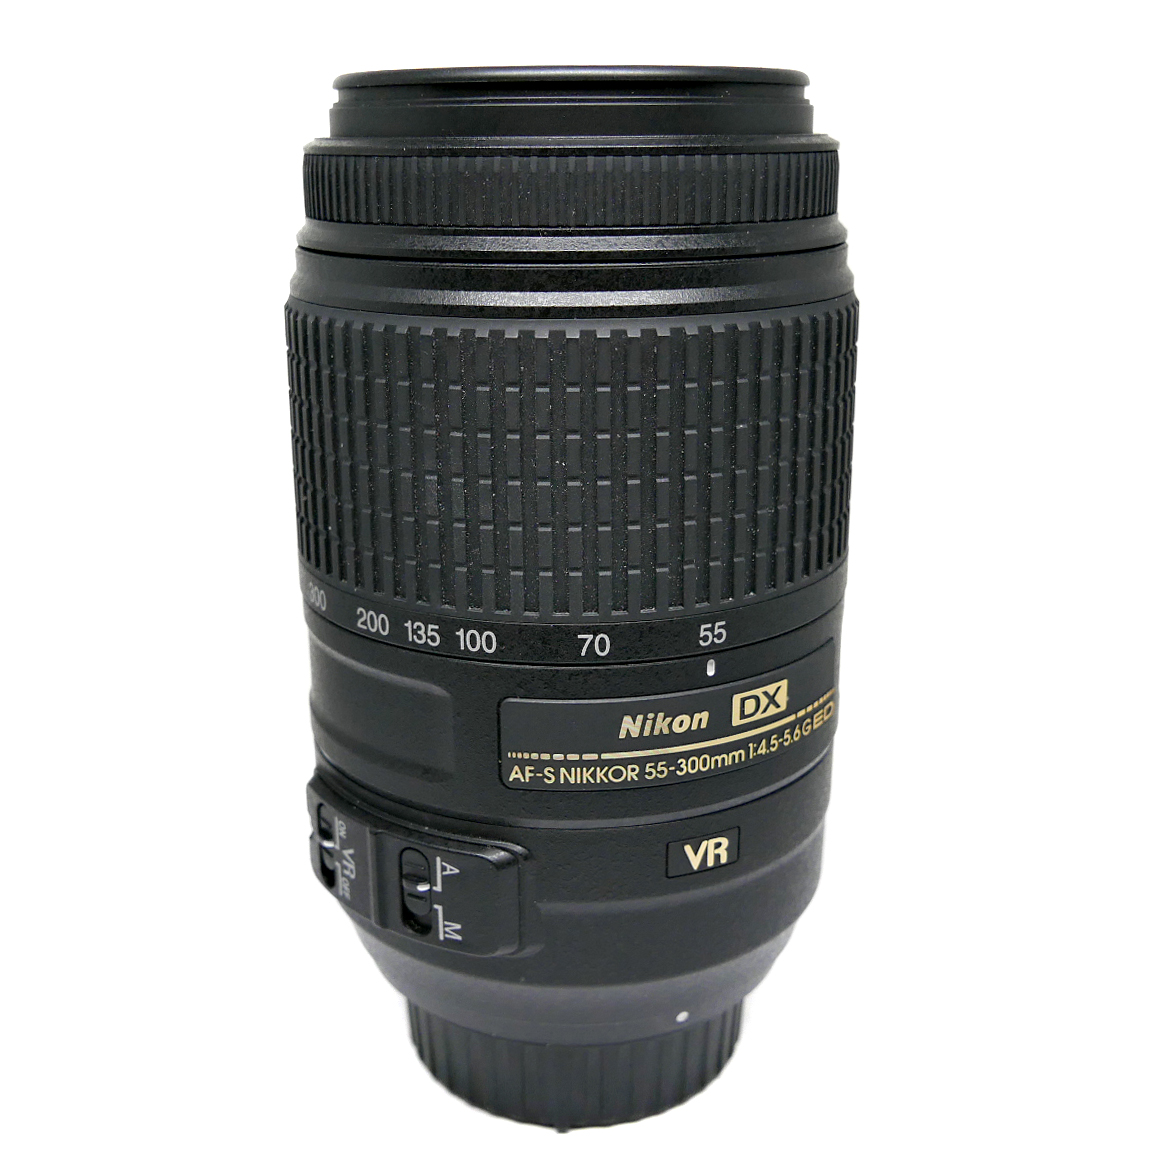 (Myyty) Nikon AF-S DX Nikkor 55-300mm f/4.5-5.6 G ED VR (käytetty